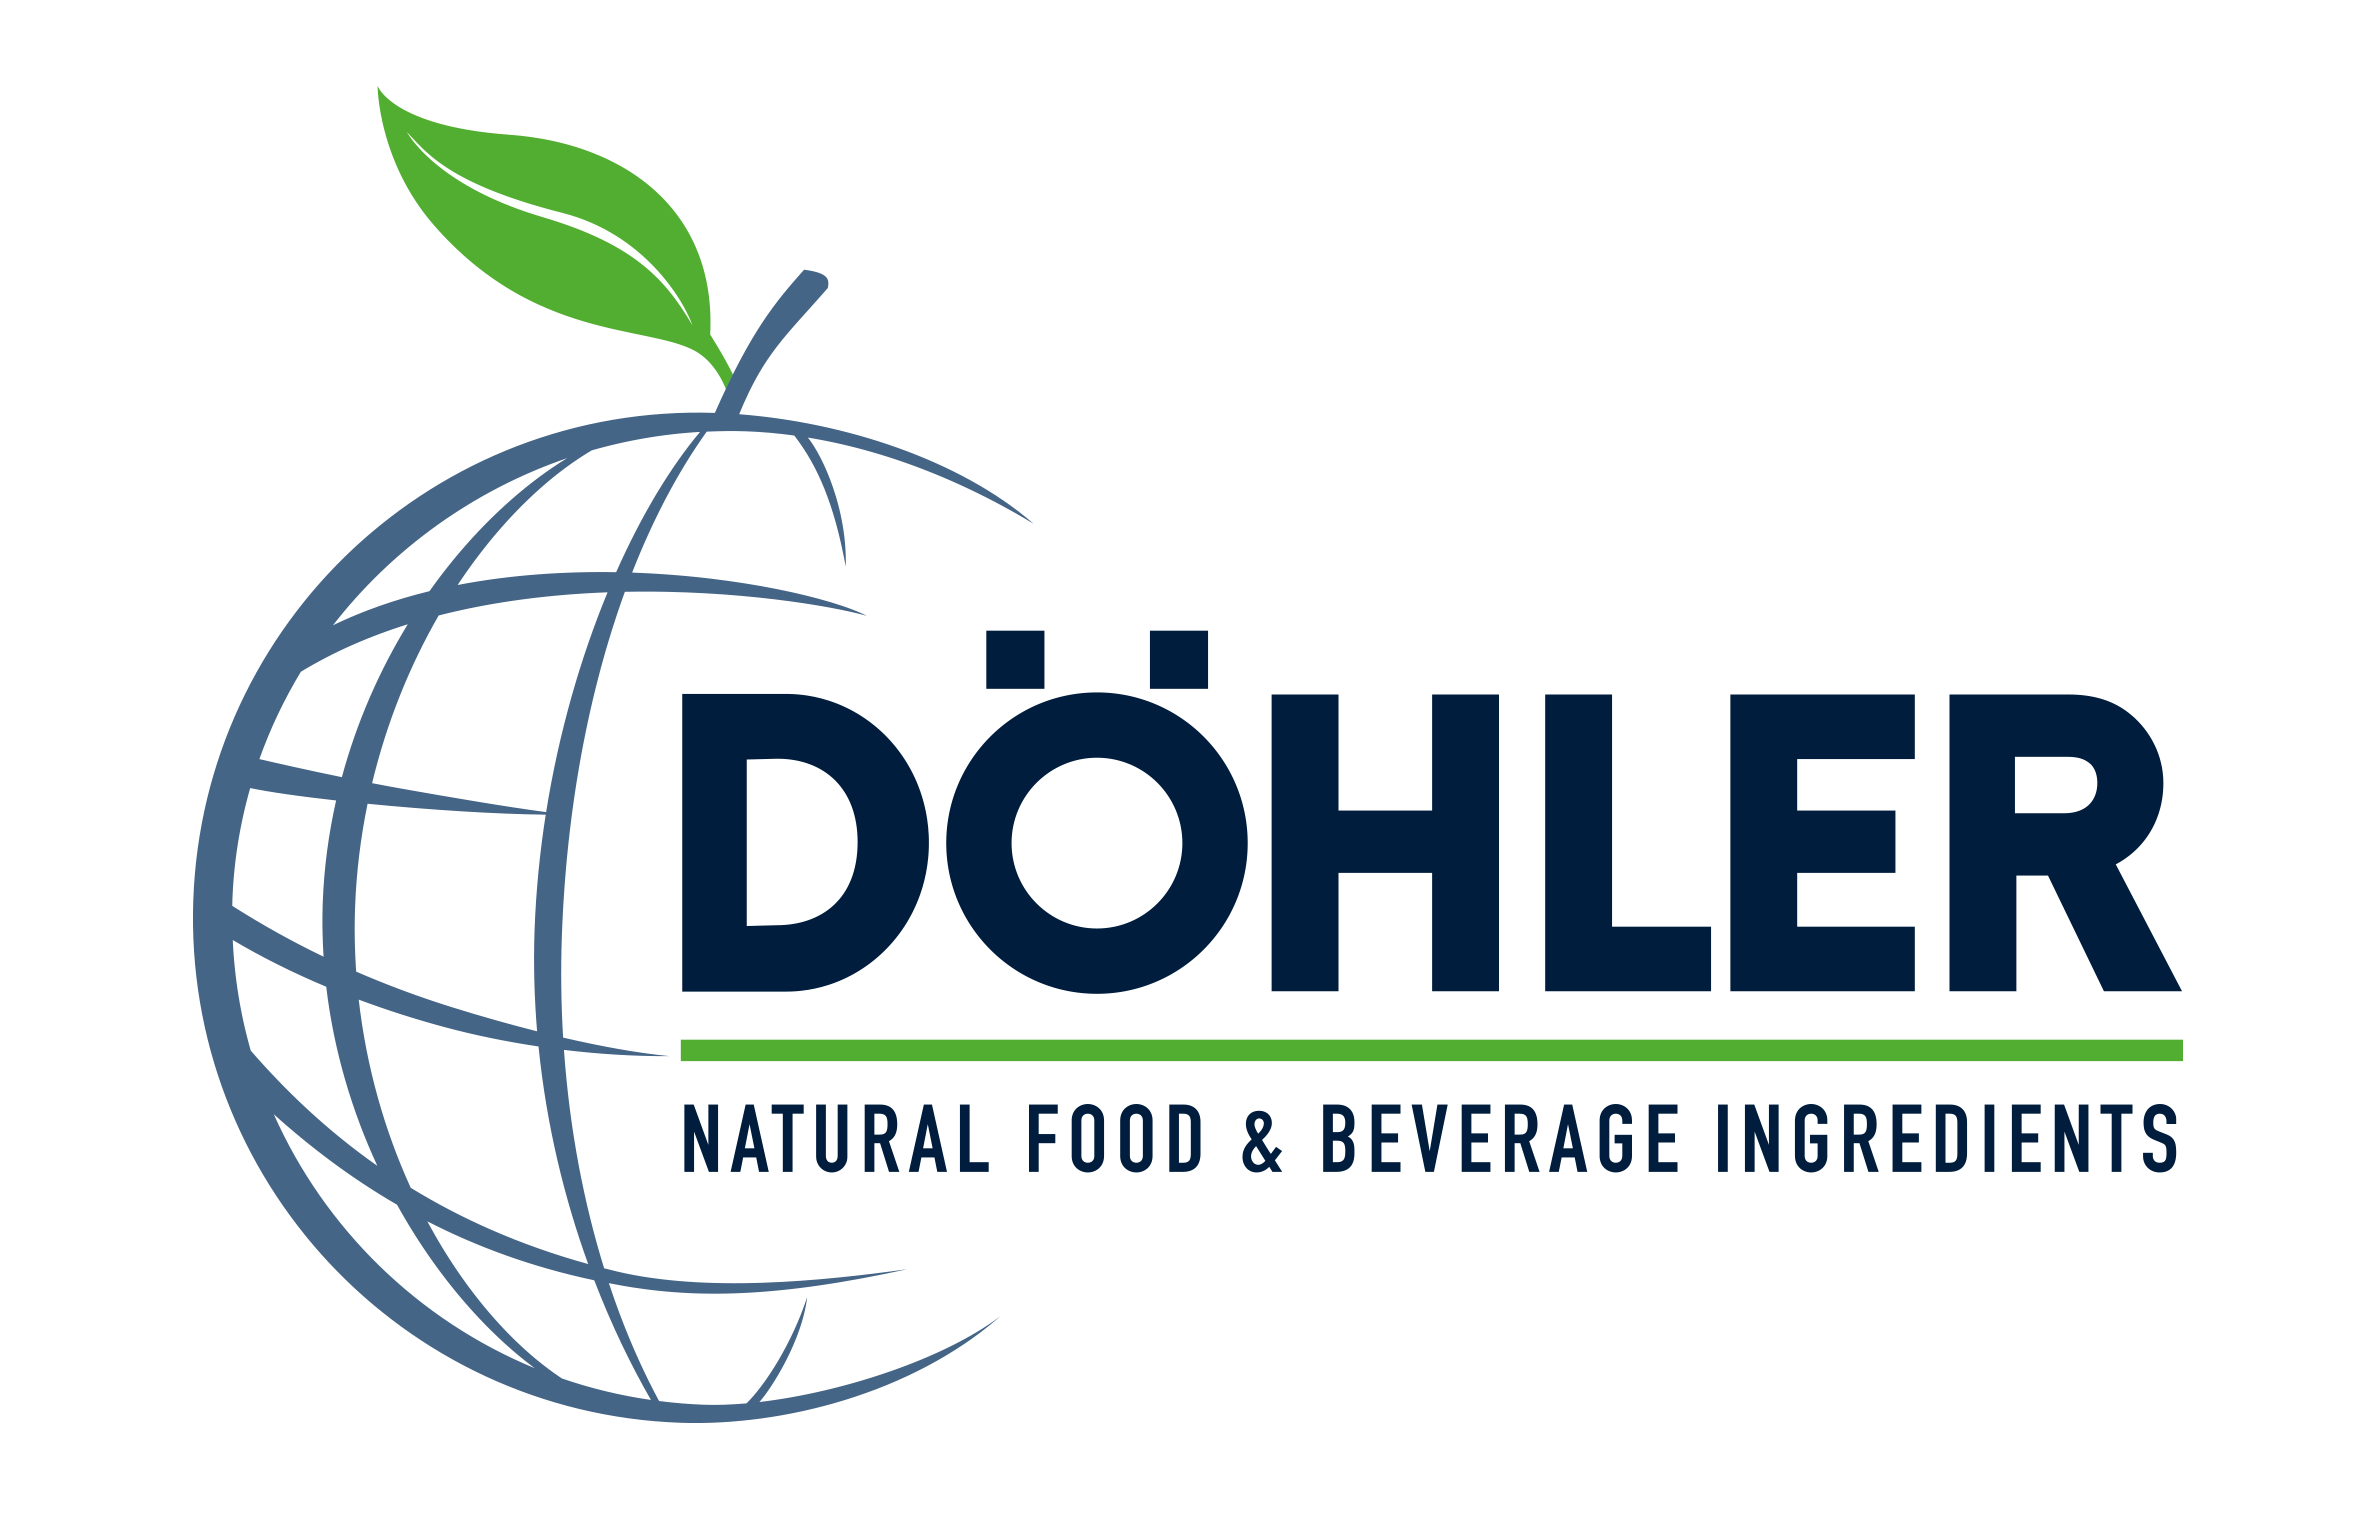 Döhler GmbH